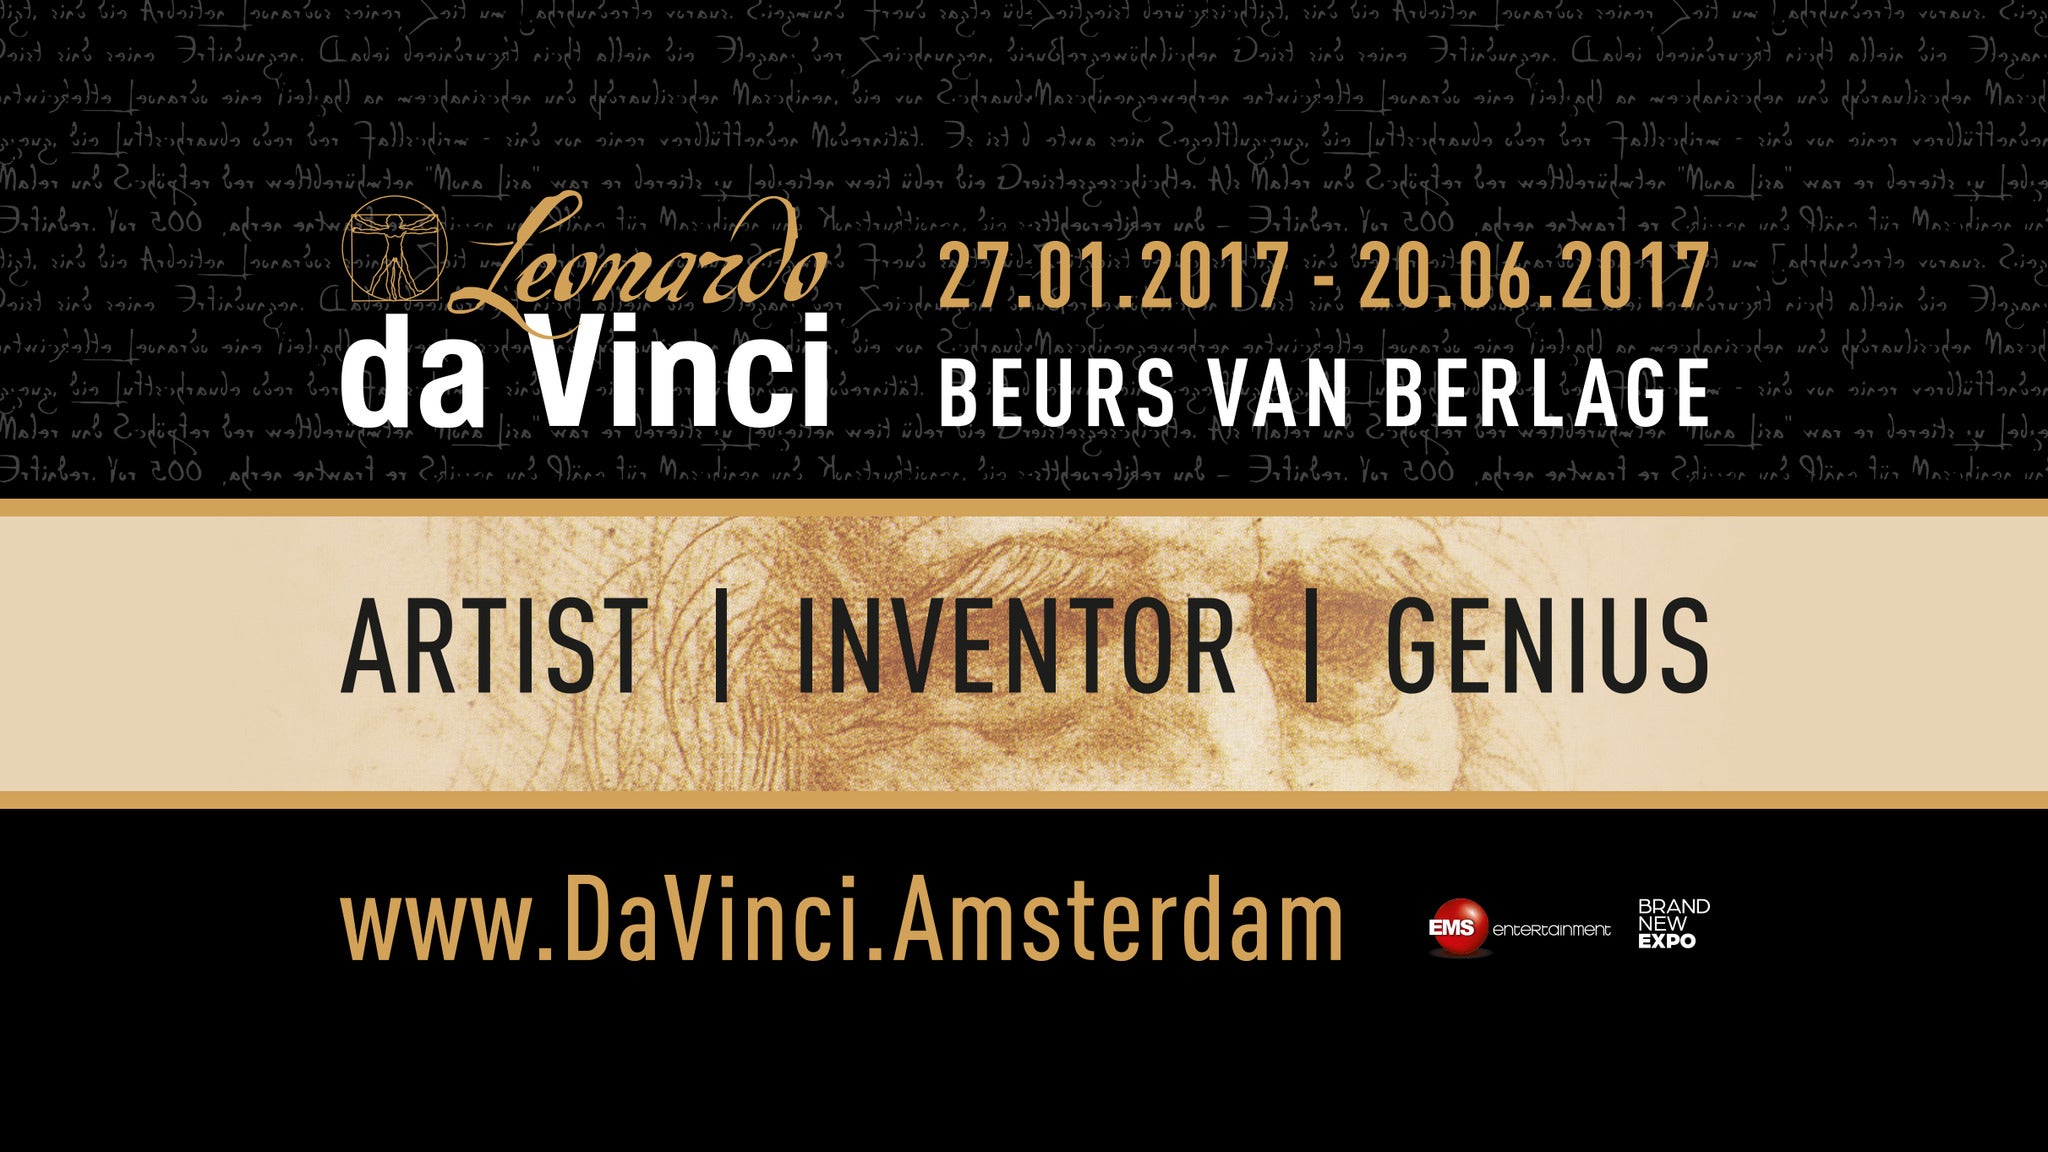 Da Vinci Exhibition Tickets Event Dates & Schedule